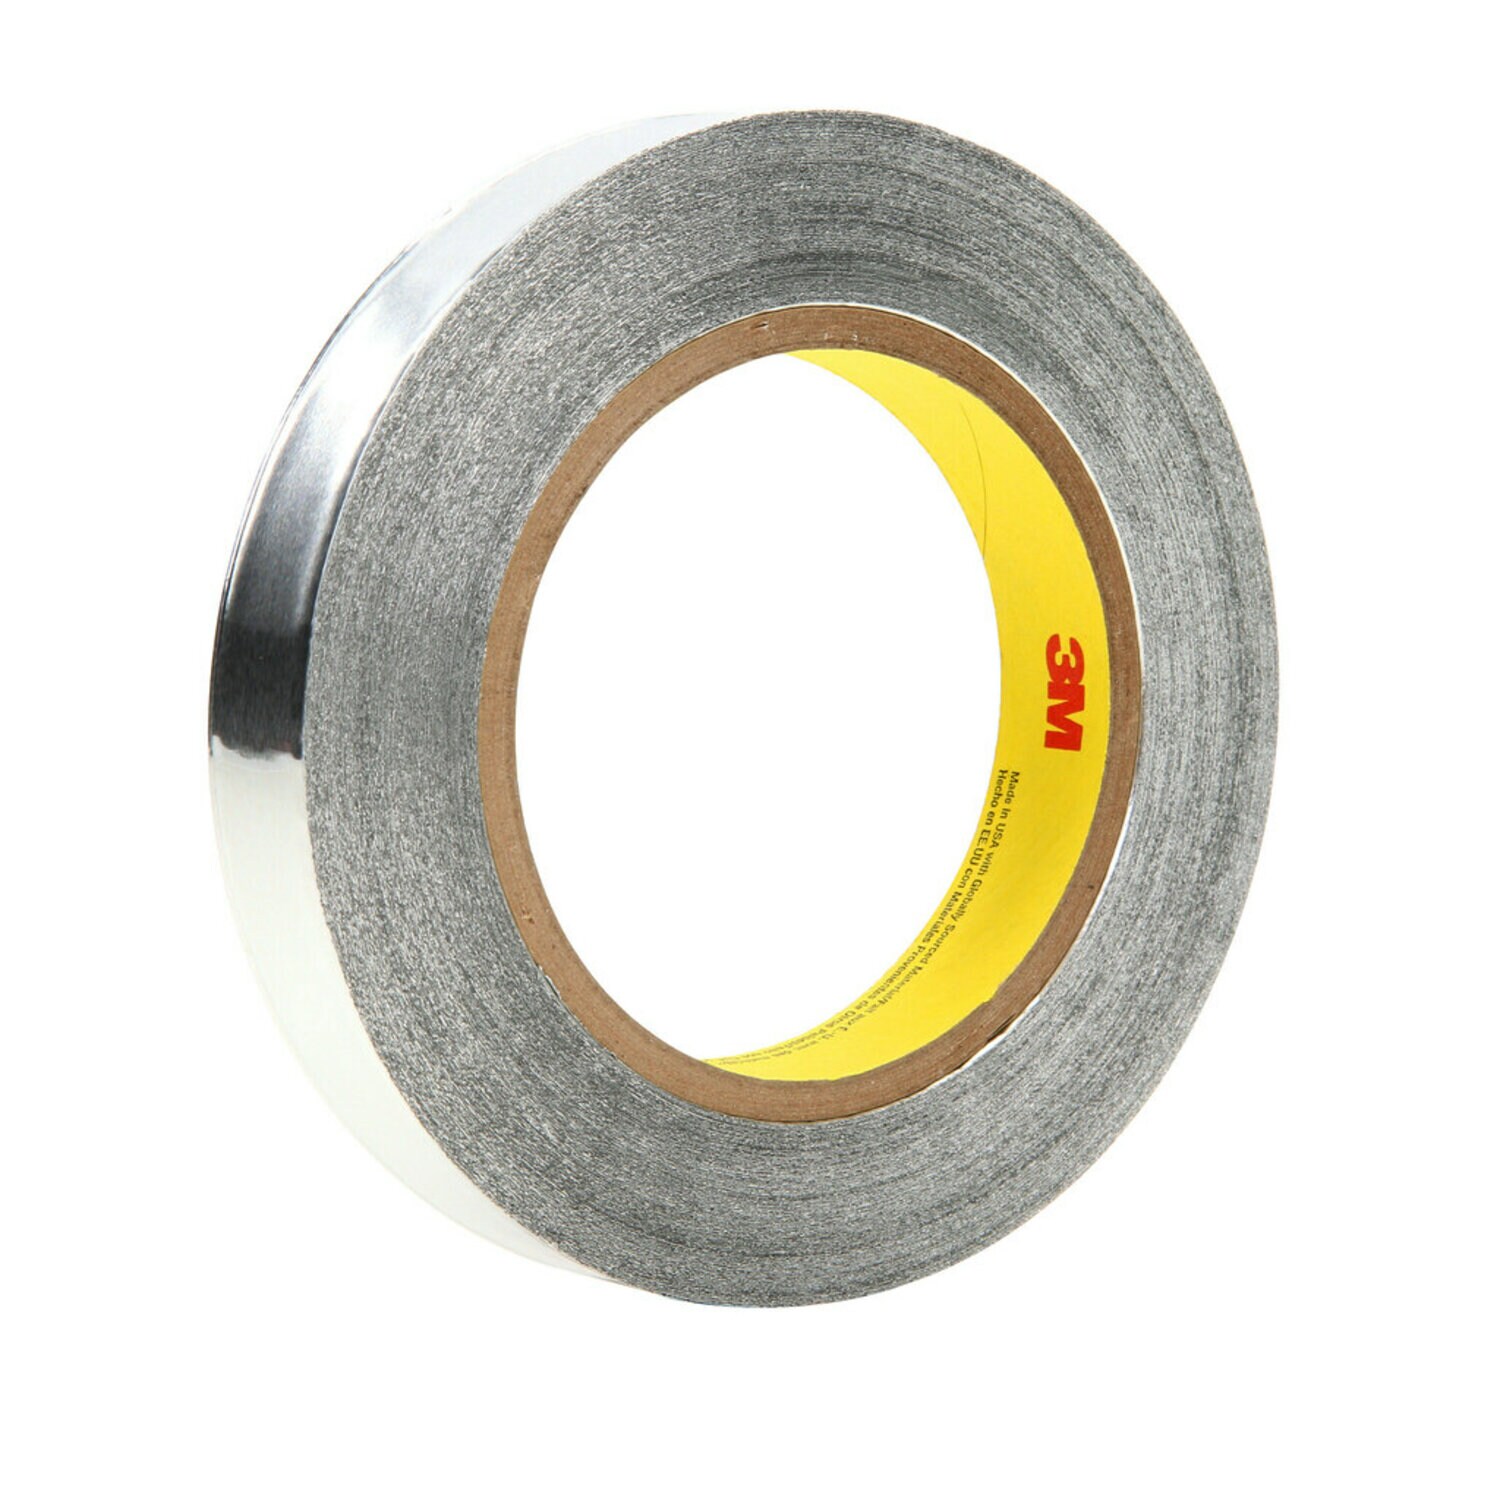 7100053743 - 3M Aluminum Foil Tape 425, Silver, 3/4 in x 60 yd, 4.6 mil, 48 rolls
per case